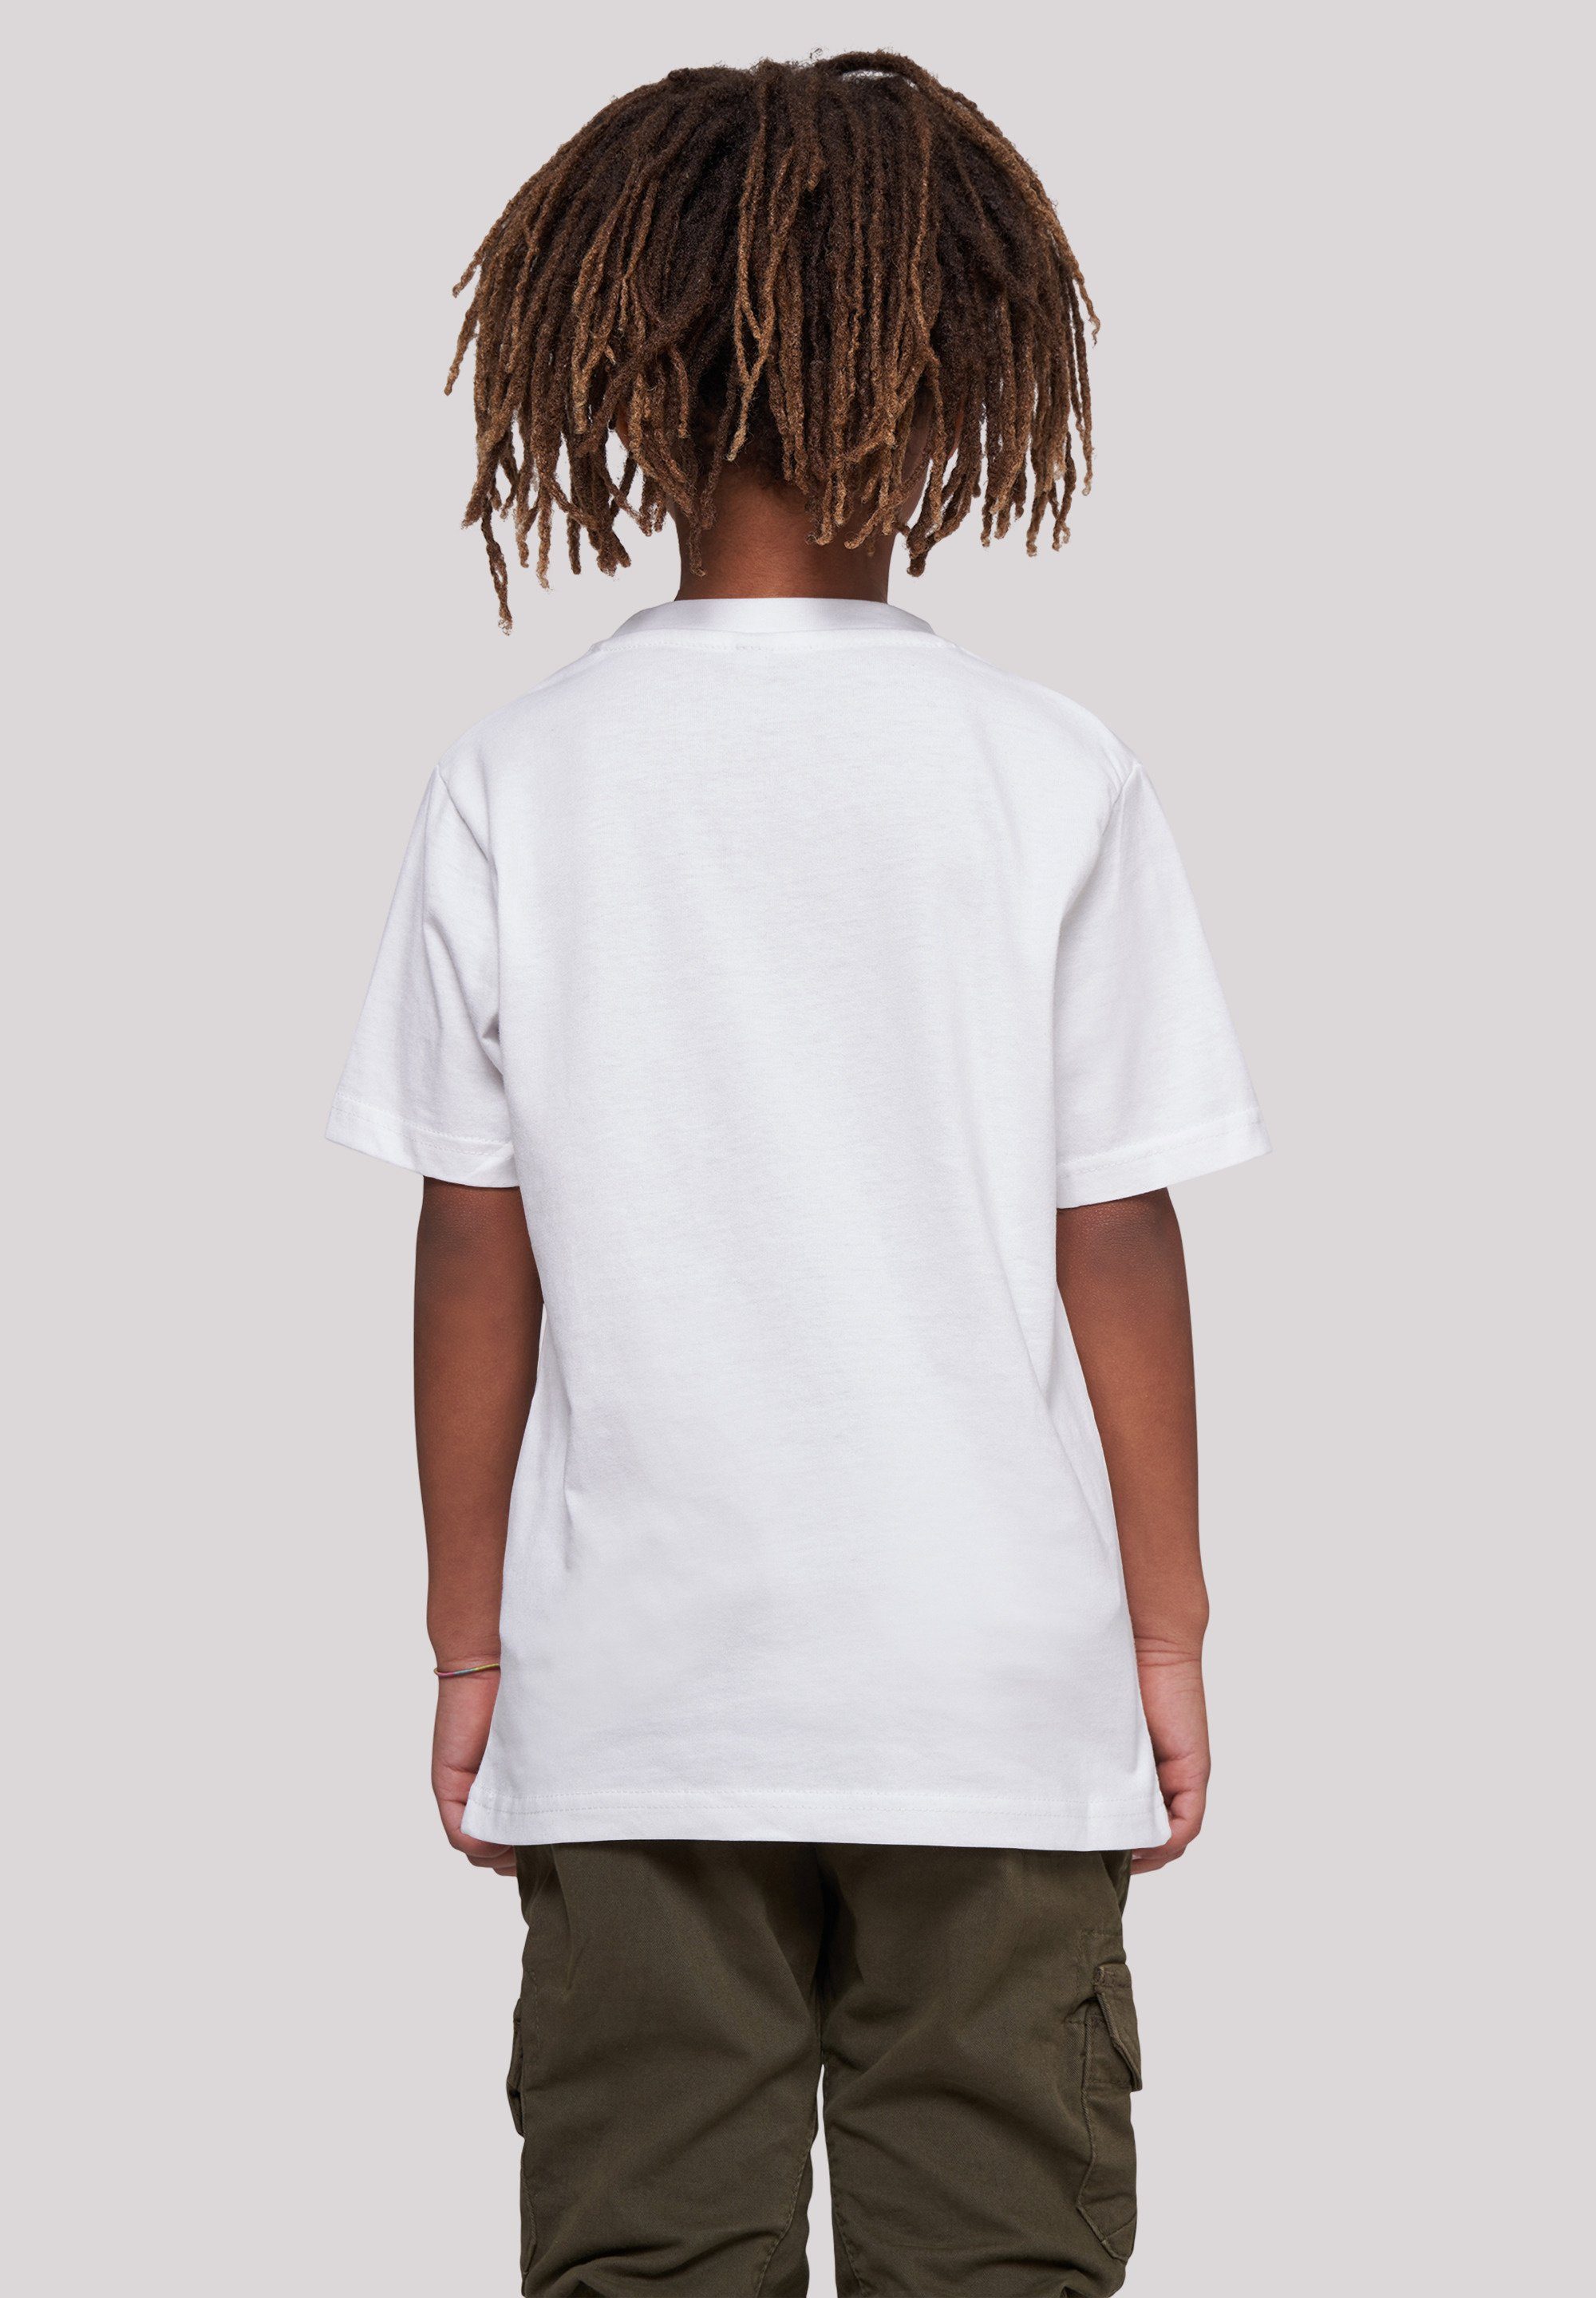 Unisex Logo Merch,Jungen,Mädchen,Bedruckt Wars Minimalist F4NT4STIC Star T-Shirt Kinder,Premium